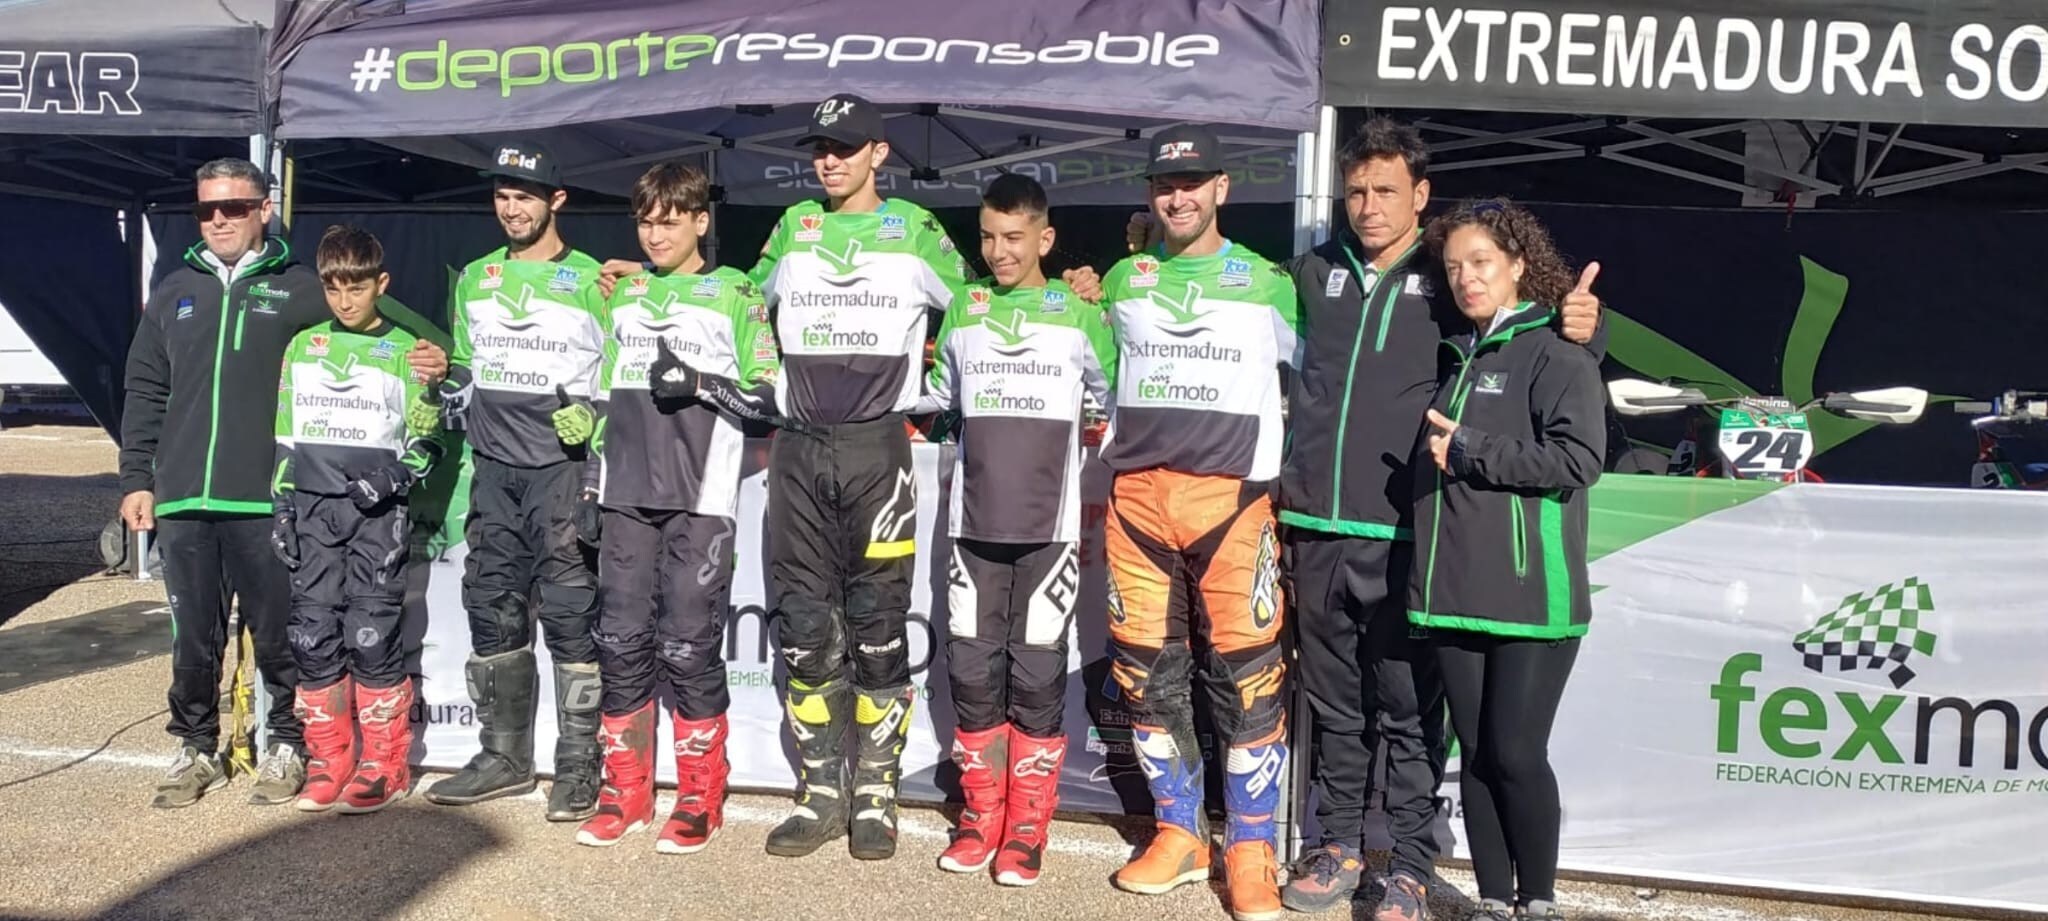 Resultado histórico de Extremadura en el Campeonato de España de Motocross por Autonomías